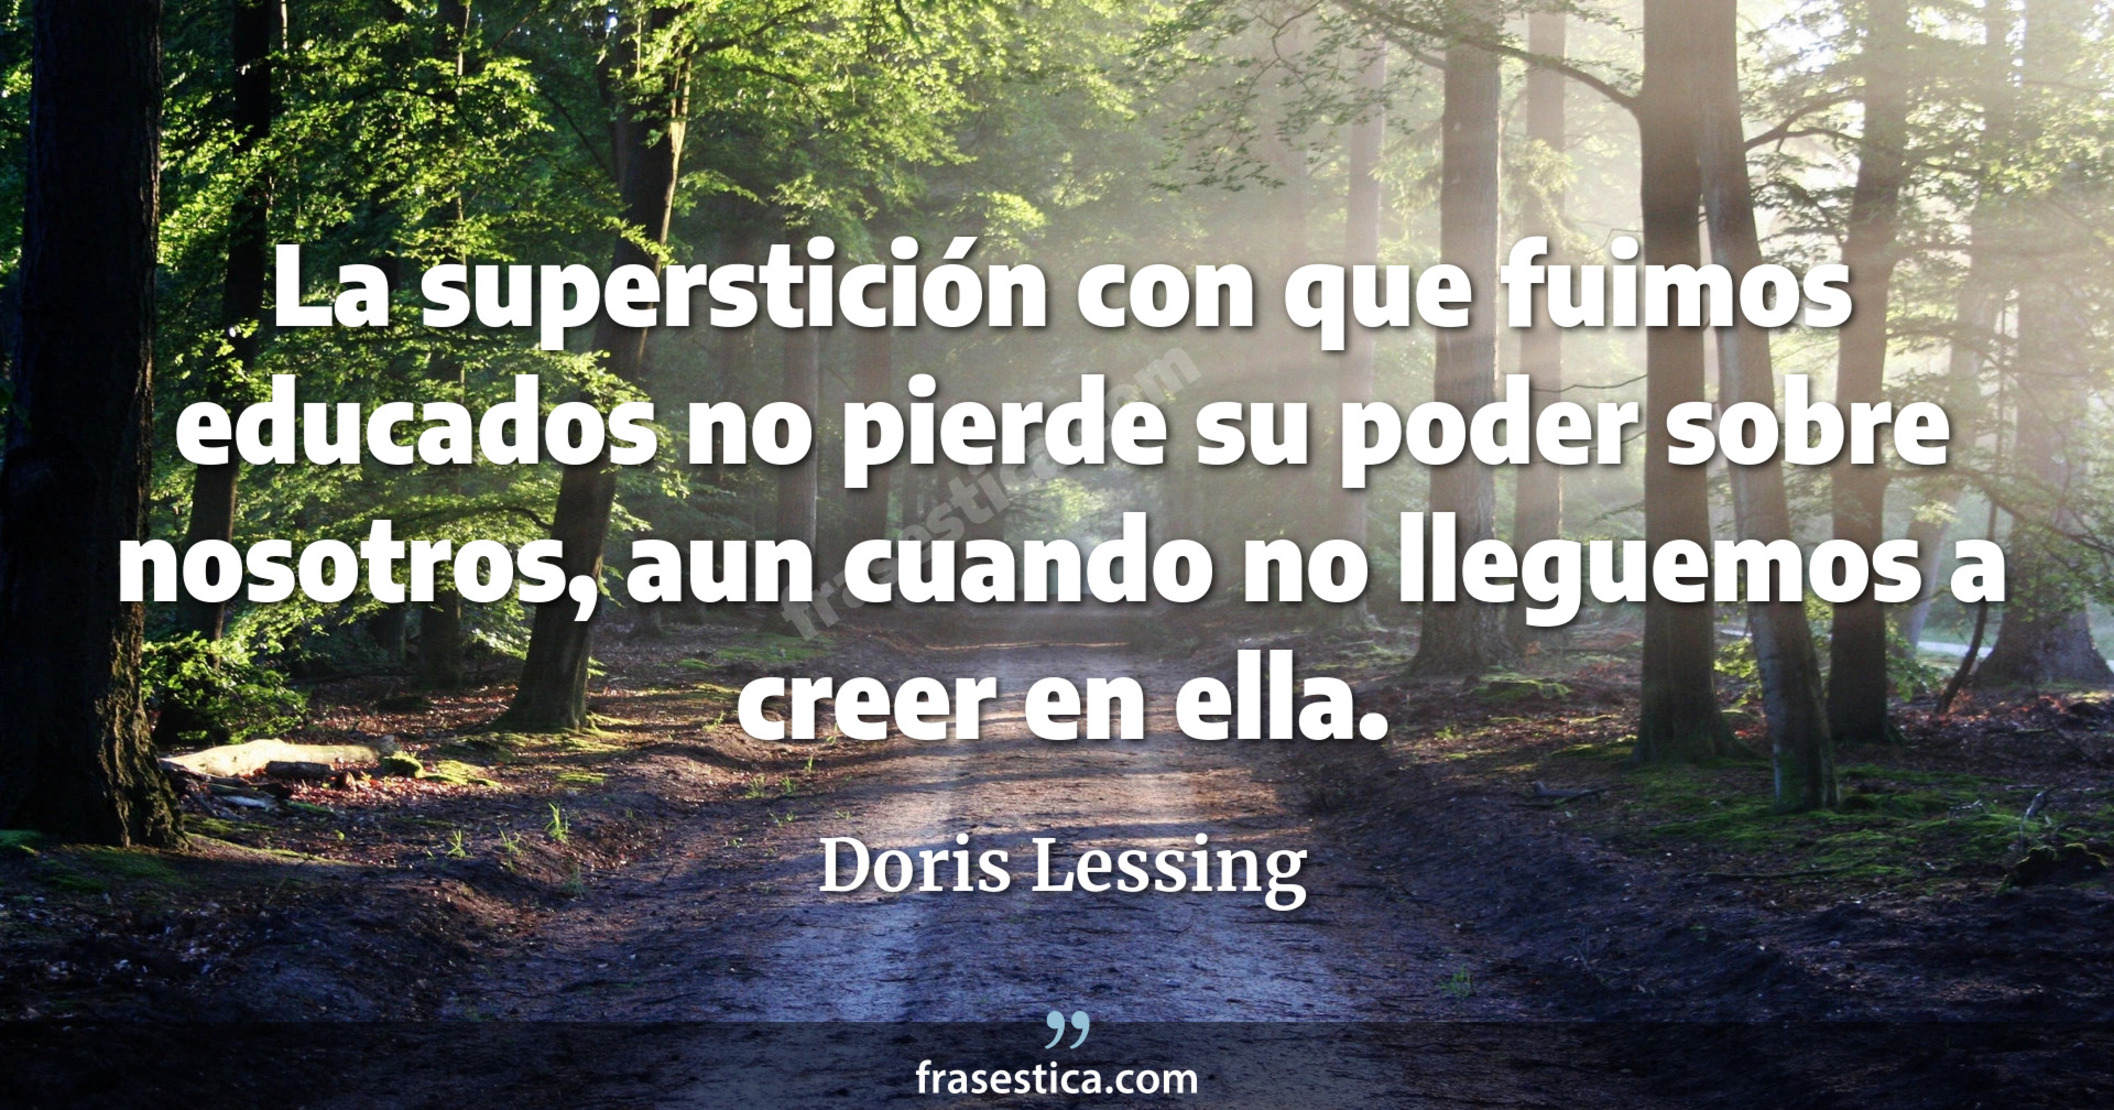 La superstición con que fuimos educados no pierde su poder sobre nosotros, aun cuando no lleguemos a creer en ella. - Doris Lessing